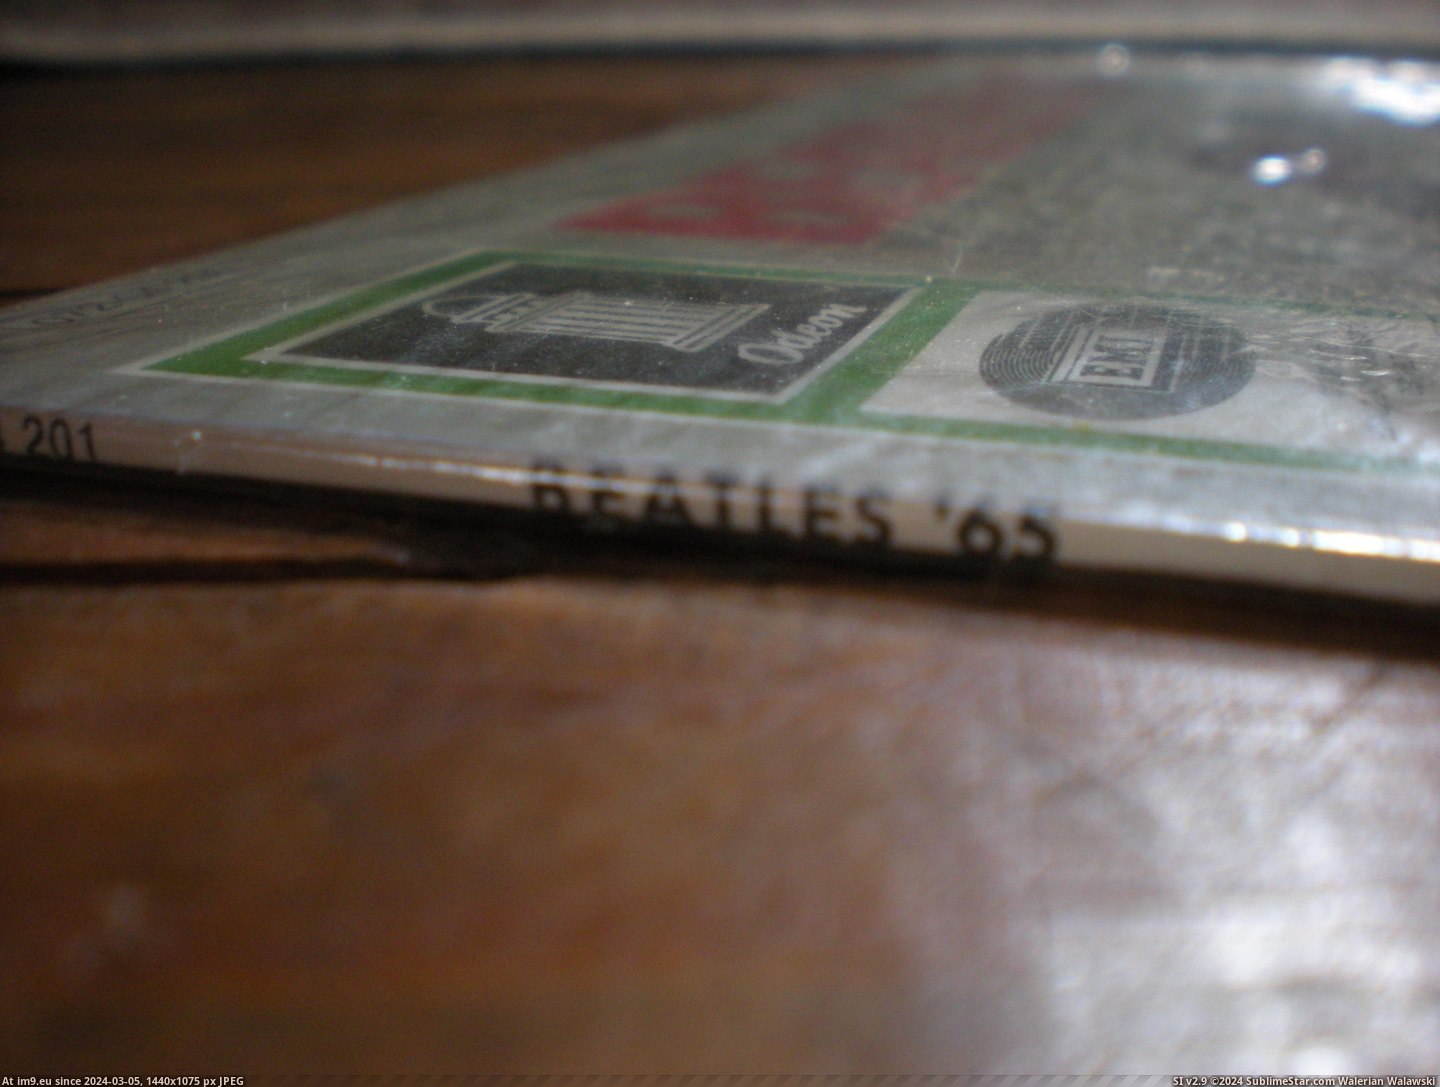  #Beatles  Beatles 65 8 Pic. (Изображение из альбом new 1))